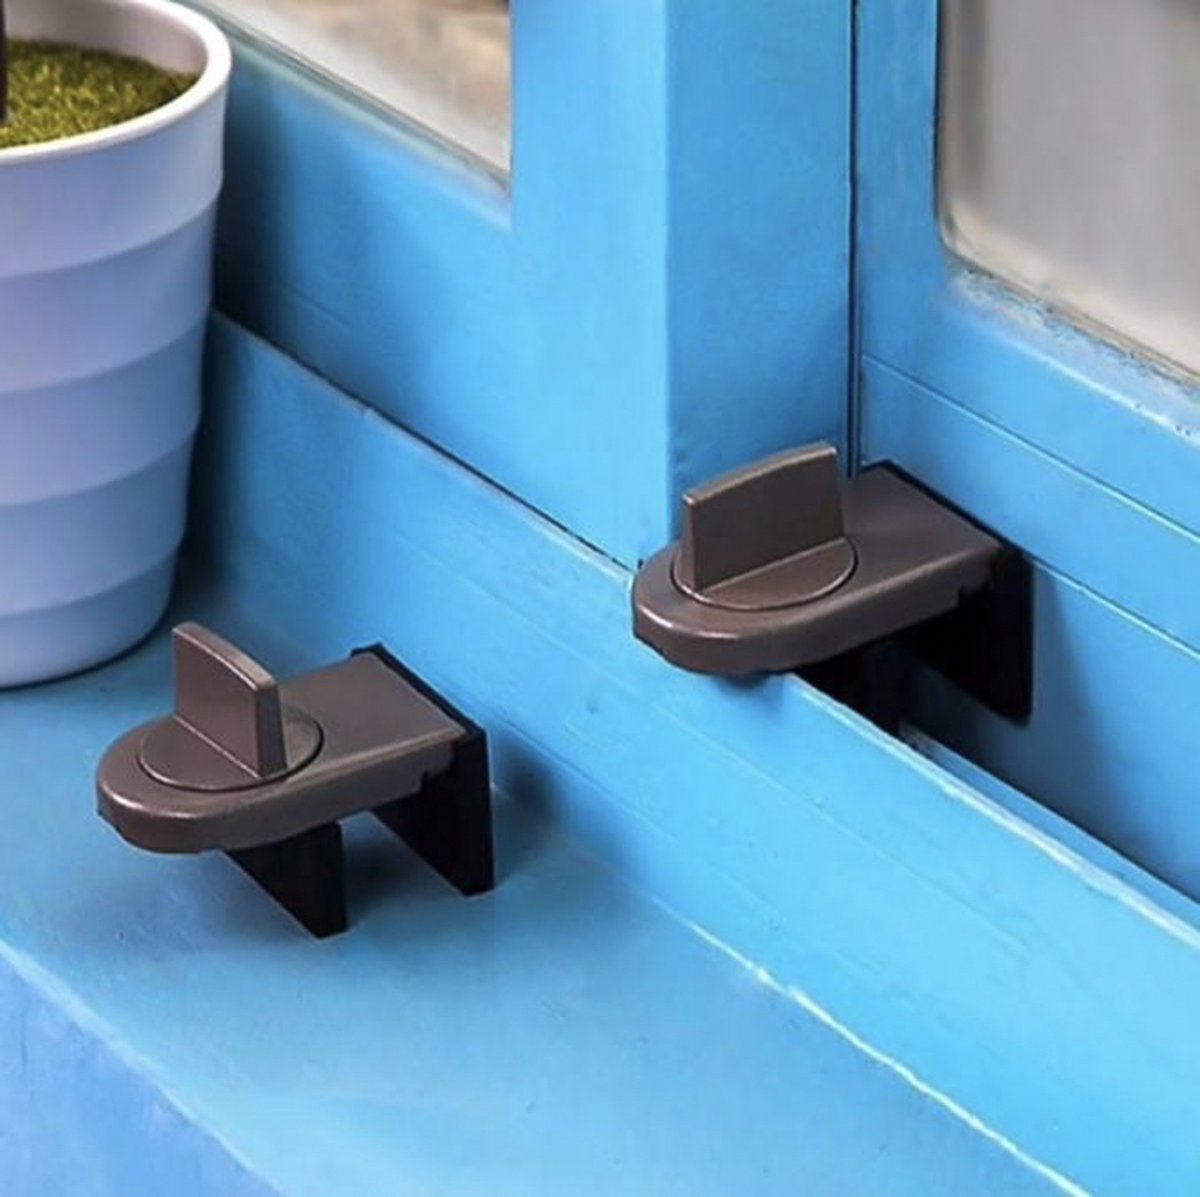 Knaak raam slot - window lock - beveiliging - houd uw huis veilig - bruin - kinderslot - schuifraam - 1 stuk